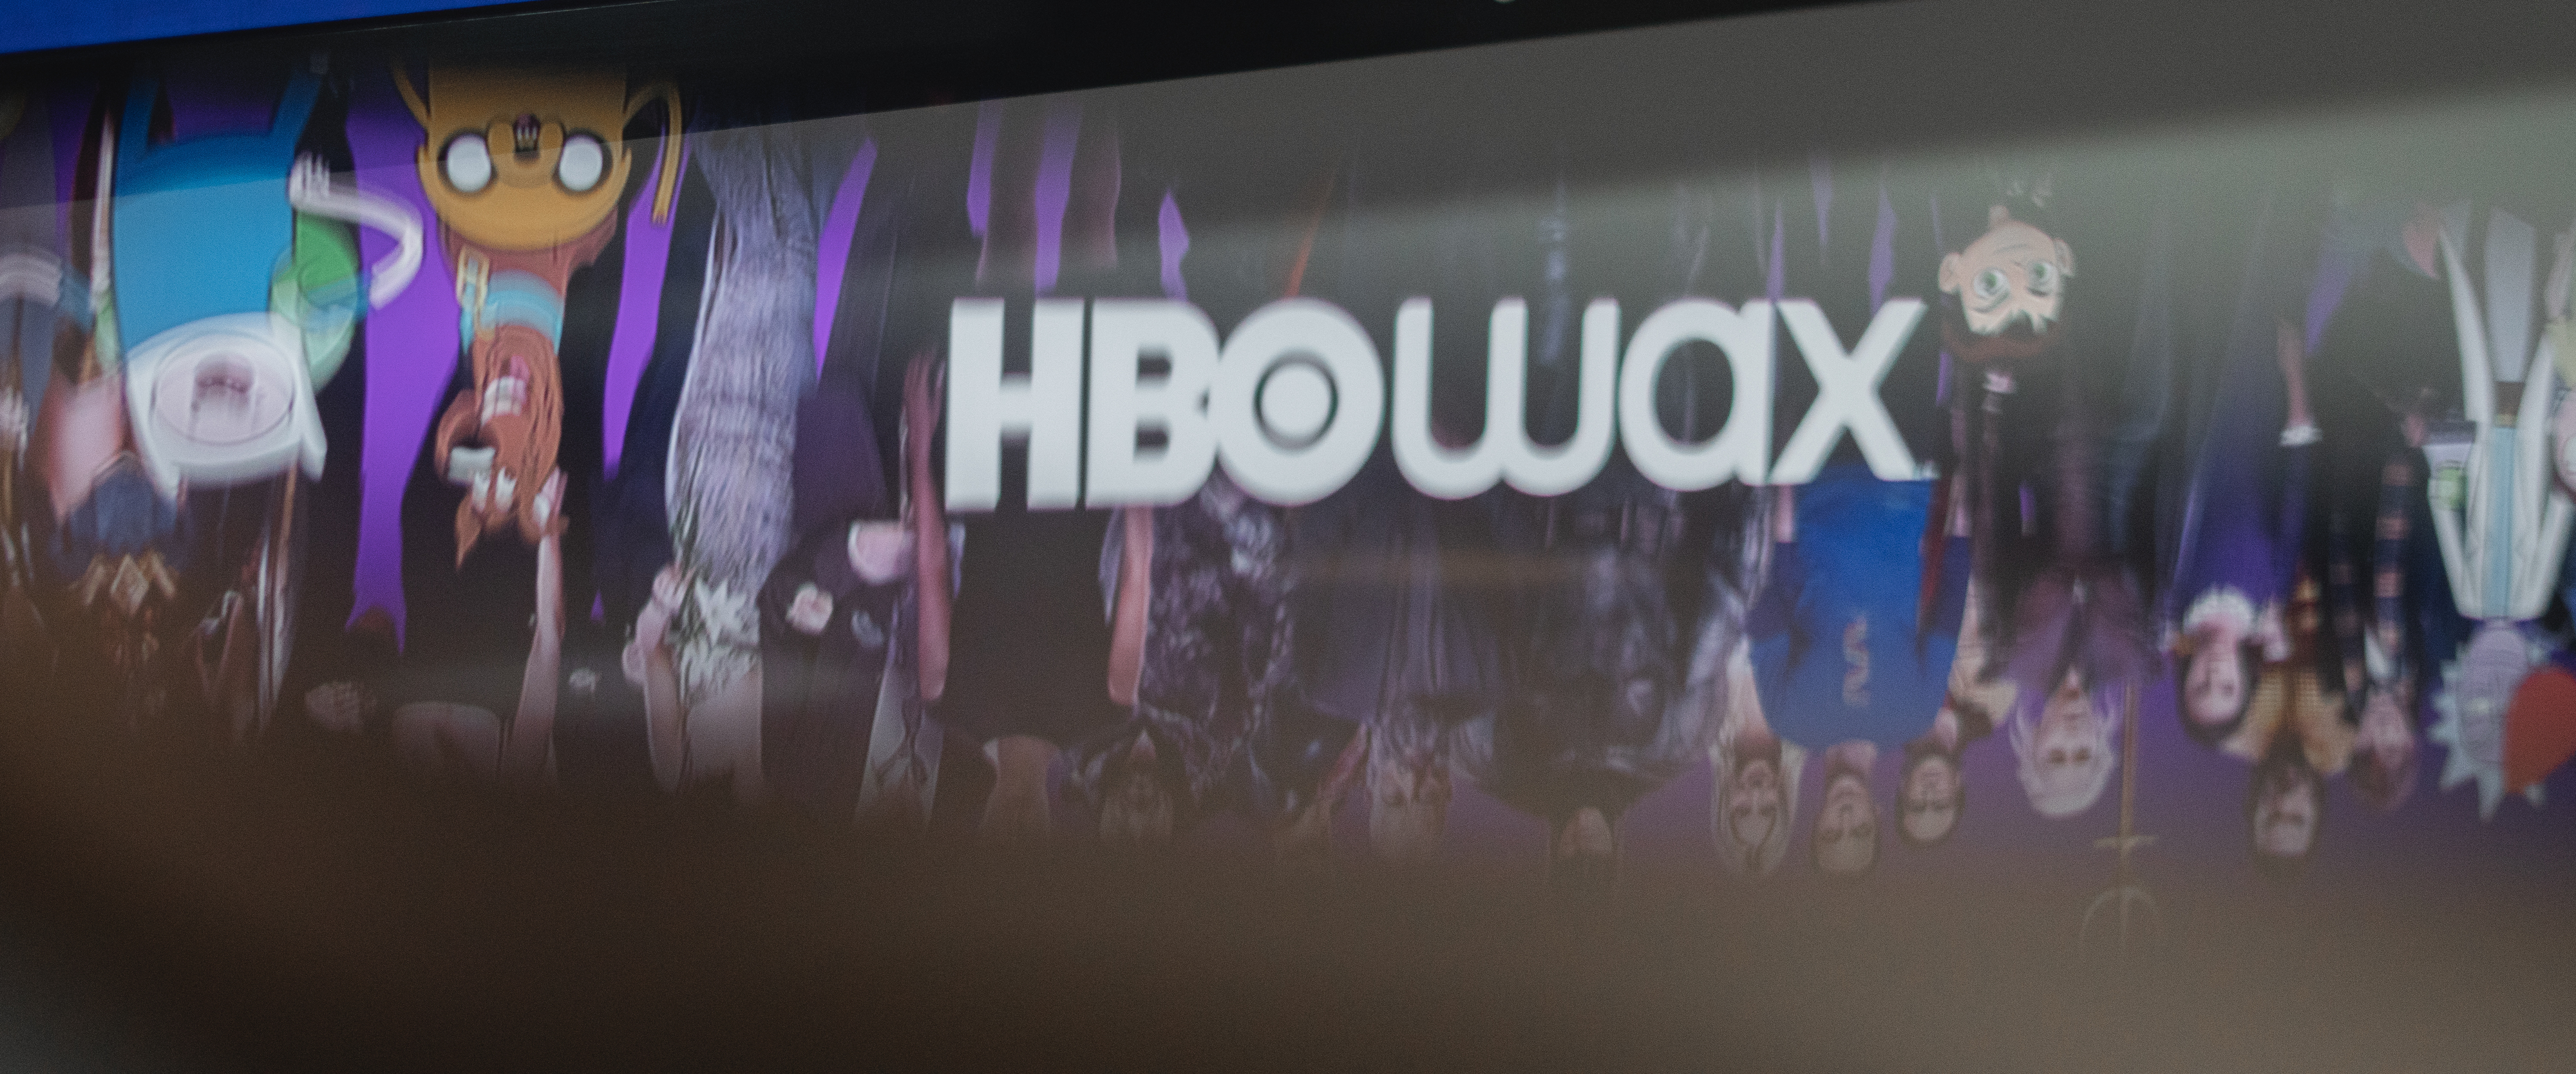 HBO Max já chegou a Portugal. Uma nova experiência, catálogo